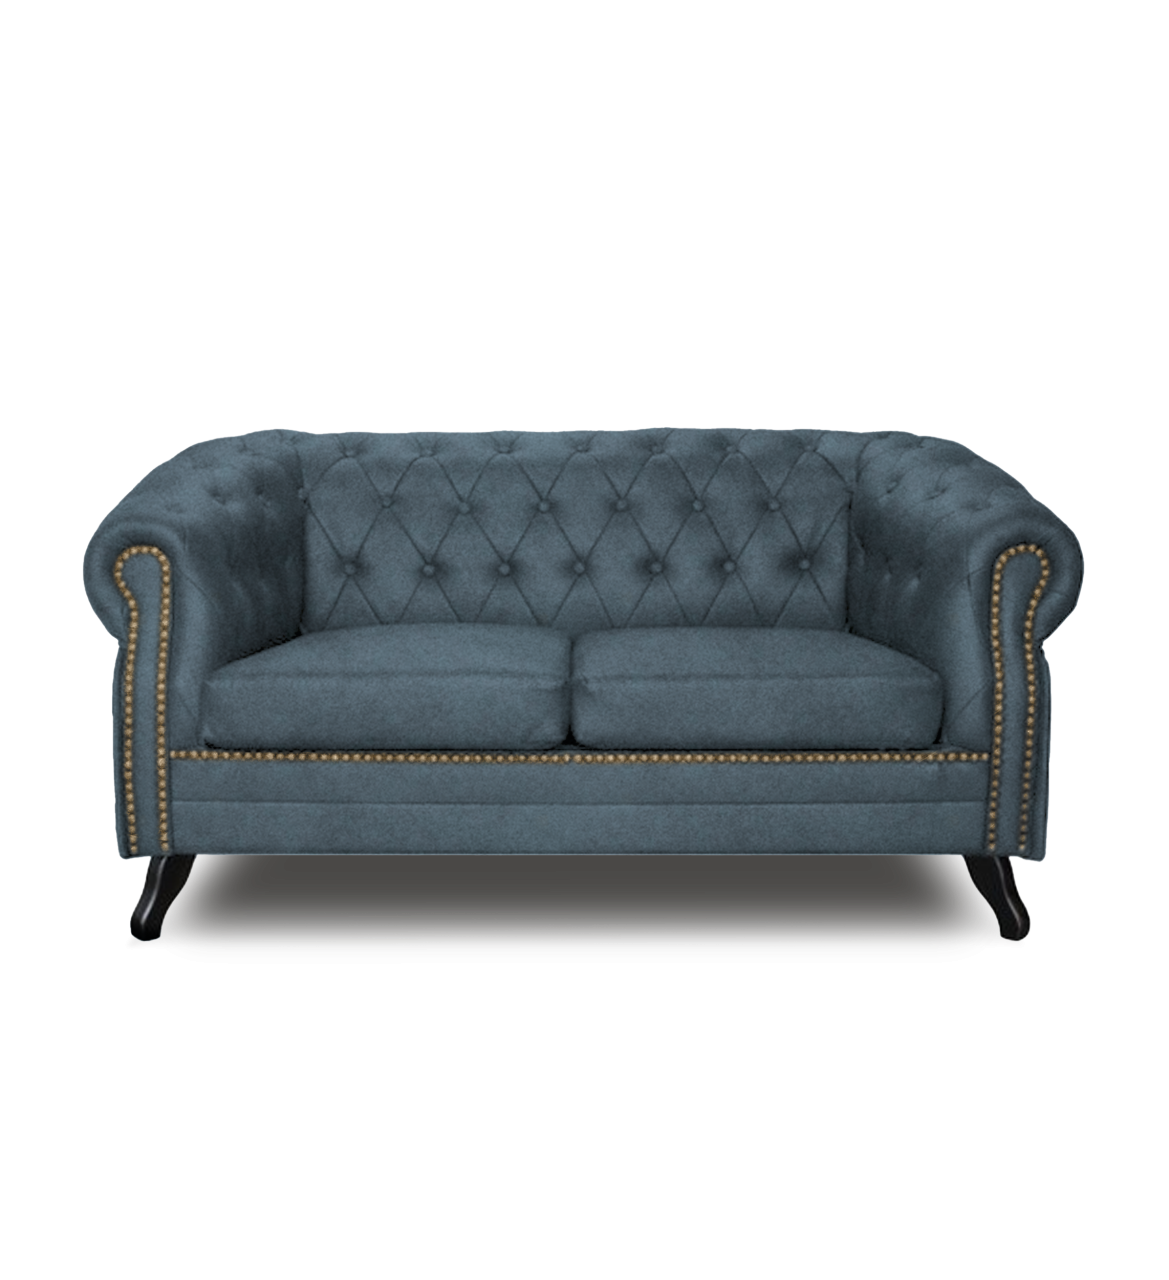 SERPIALLE 2-Sitzer Sofa - Stoffauswahlmöglichkeiten von LoftMarkt